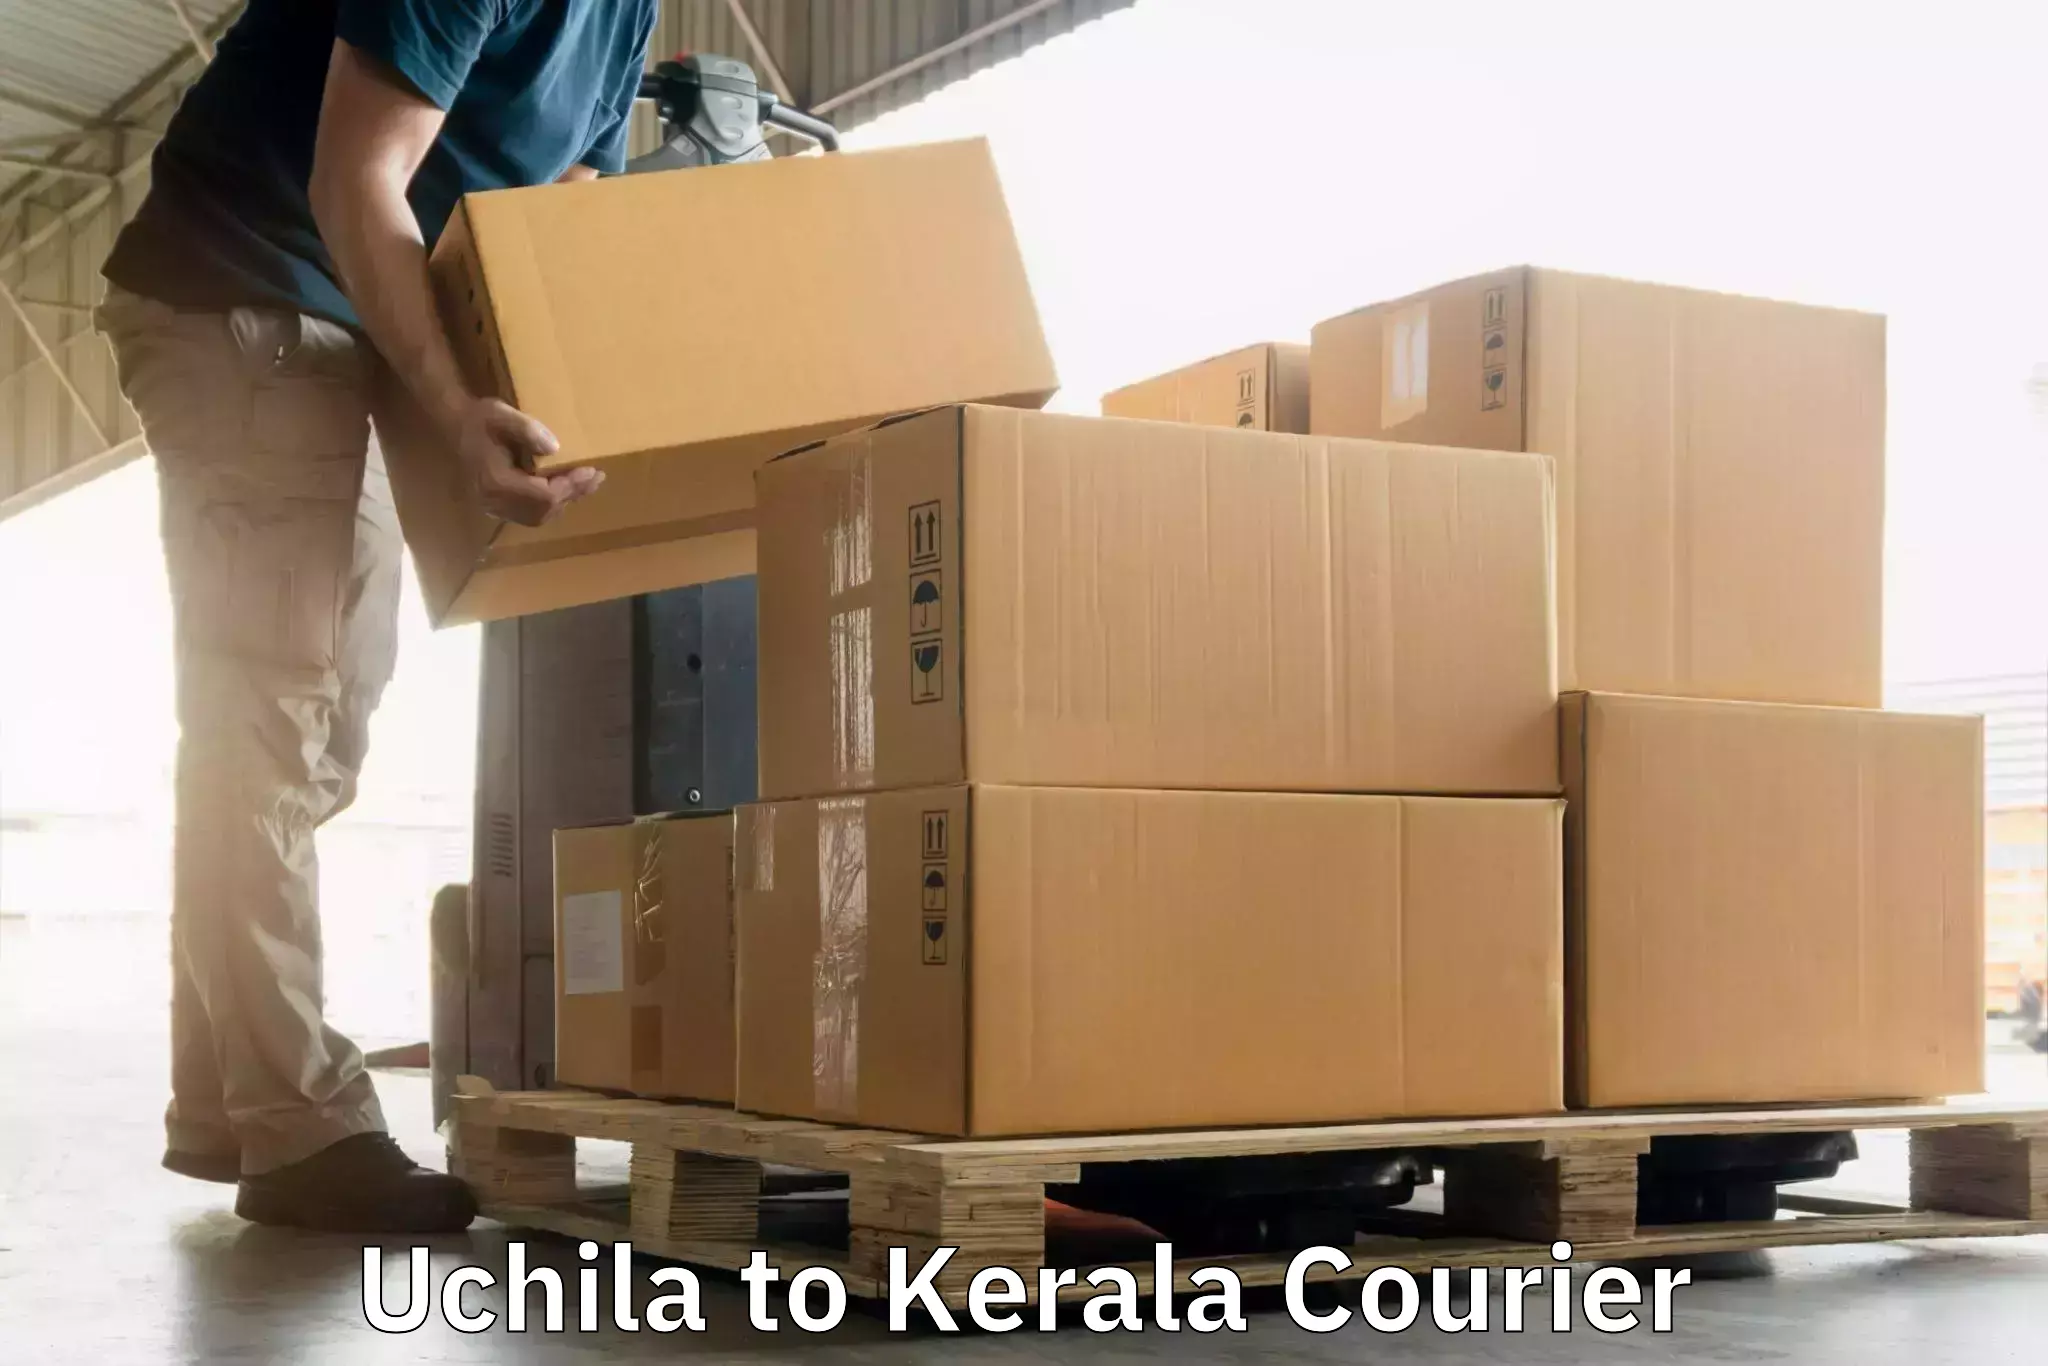 Global shipping networks Uchila to IIIT Kottayam